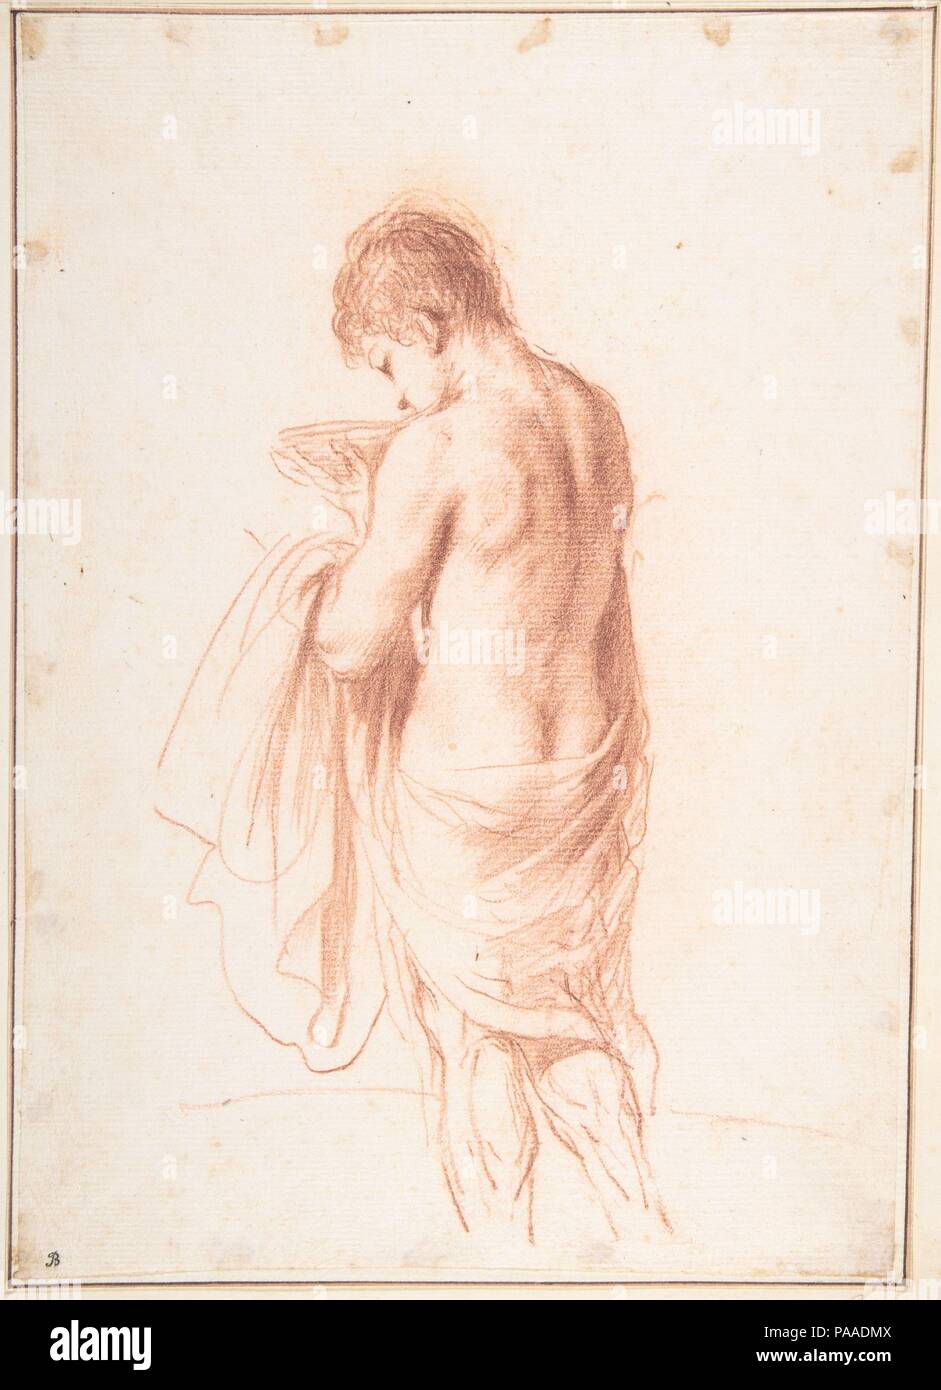 Jugend stehend von hinten gesehen, eine Schüssel (Ganymed?). Artist: Guercino (Giovanni Francesco Barbieri) (Italienisch, Cento 1591-1666 Bologna). Maße: Blatt: 10 1/2 x 7 1/2 in. (26,7 x 19,1 cm). Datum: Ca. 1635-45. Traditionell als eine Studie für die Abbildung von Ganymed - die schöne Jugend, die von Zeus entführt - diese Zeichnung da betitelt hat 'Stehende Jungen (oder Jugend) Holding eine Schüssel", als weder ein Ganymed noch dieser insbesondere jugendliche Gestalt in extant Guercino (Bean 1964 b, Nr. gefunden werden können 31). Jacob Bean (1967, No. 46, S. 40) datiert die Zeichnung des Künstlers mi Stockfoto